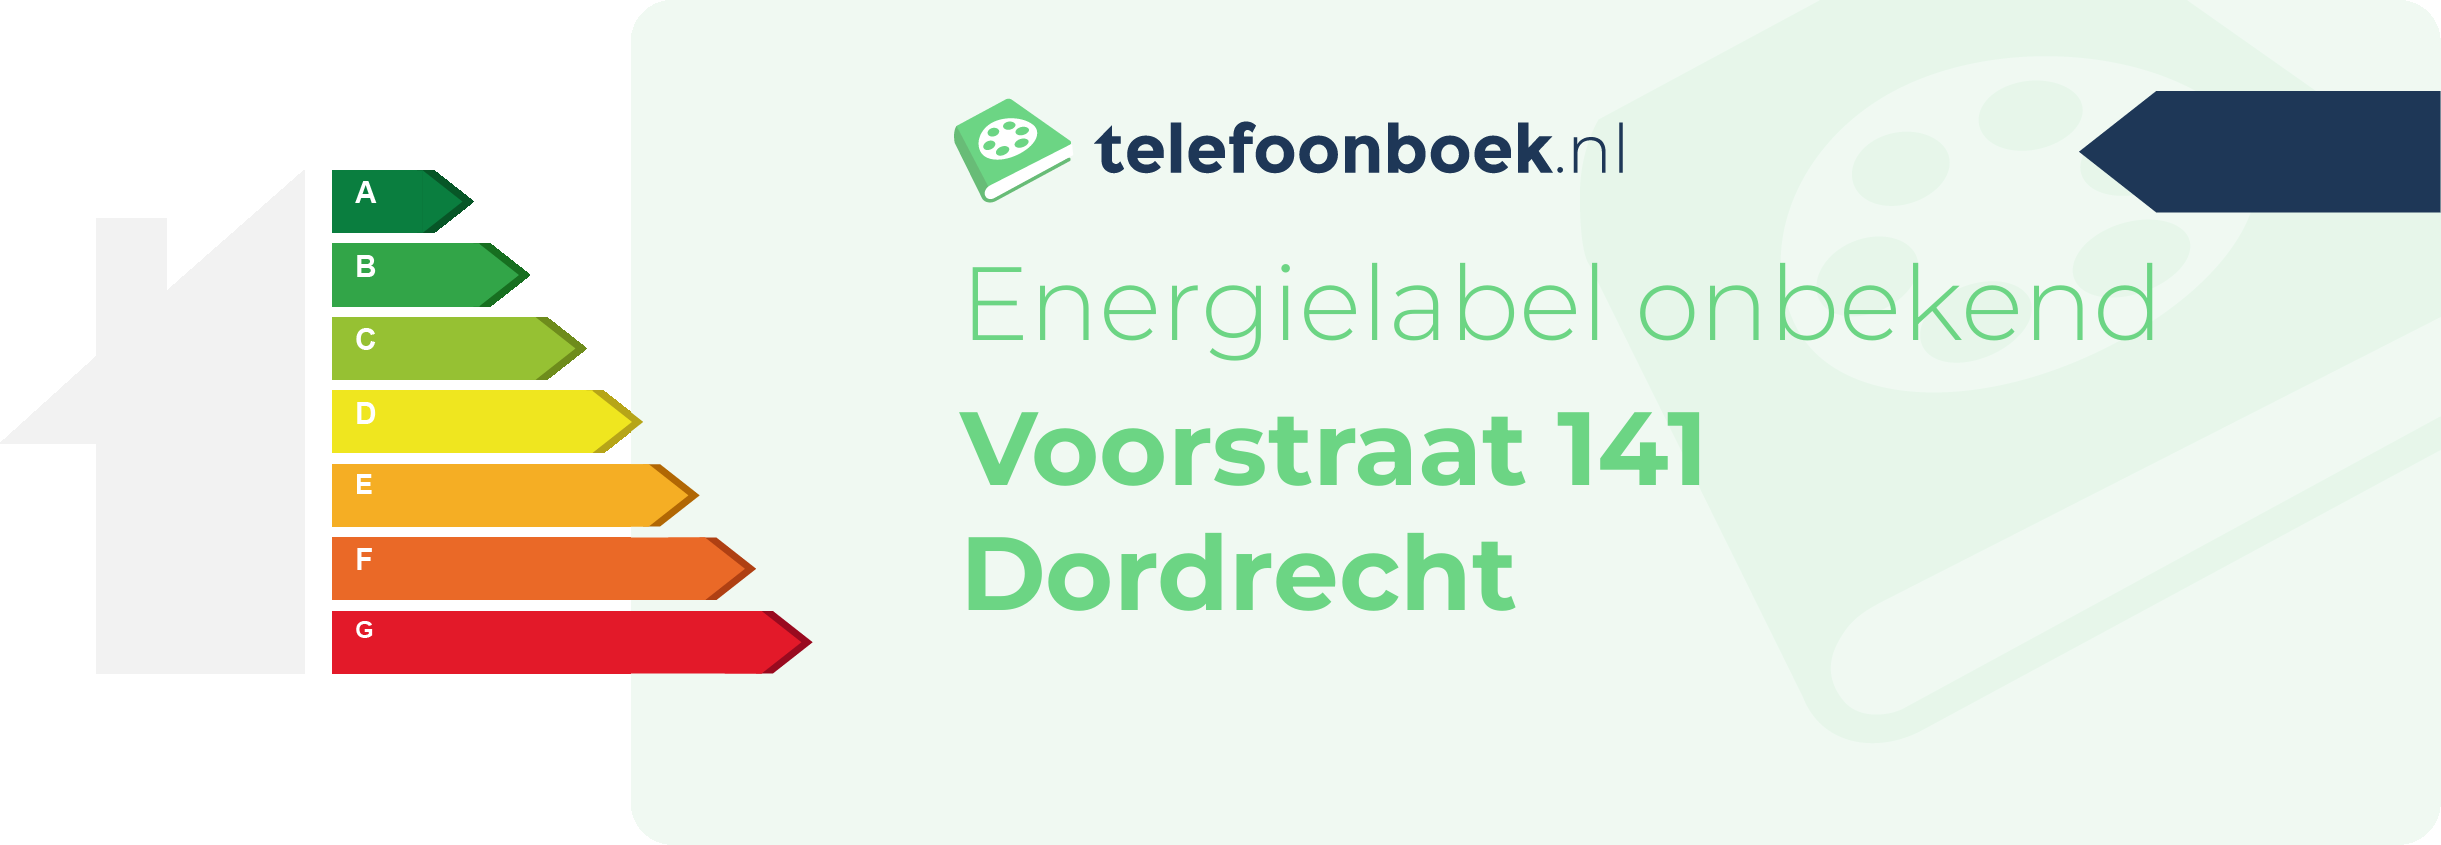 Energielabel Voorstraat 141 Dordrecht